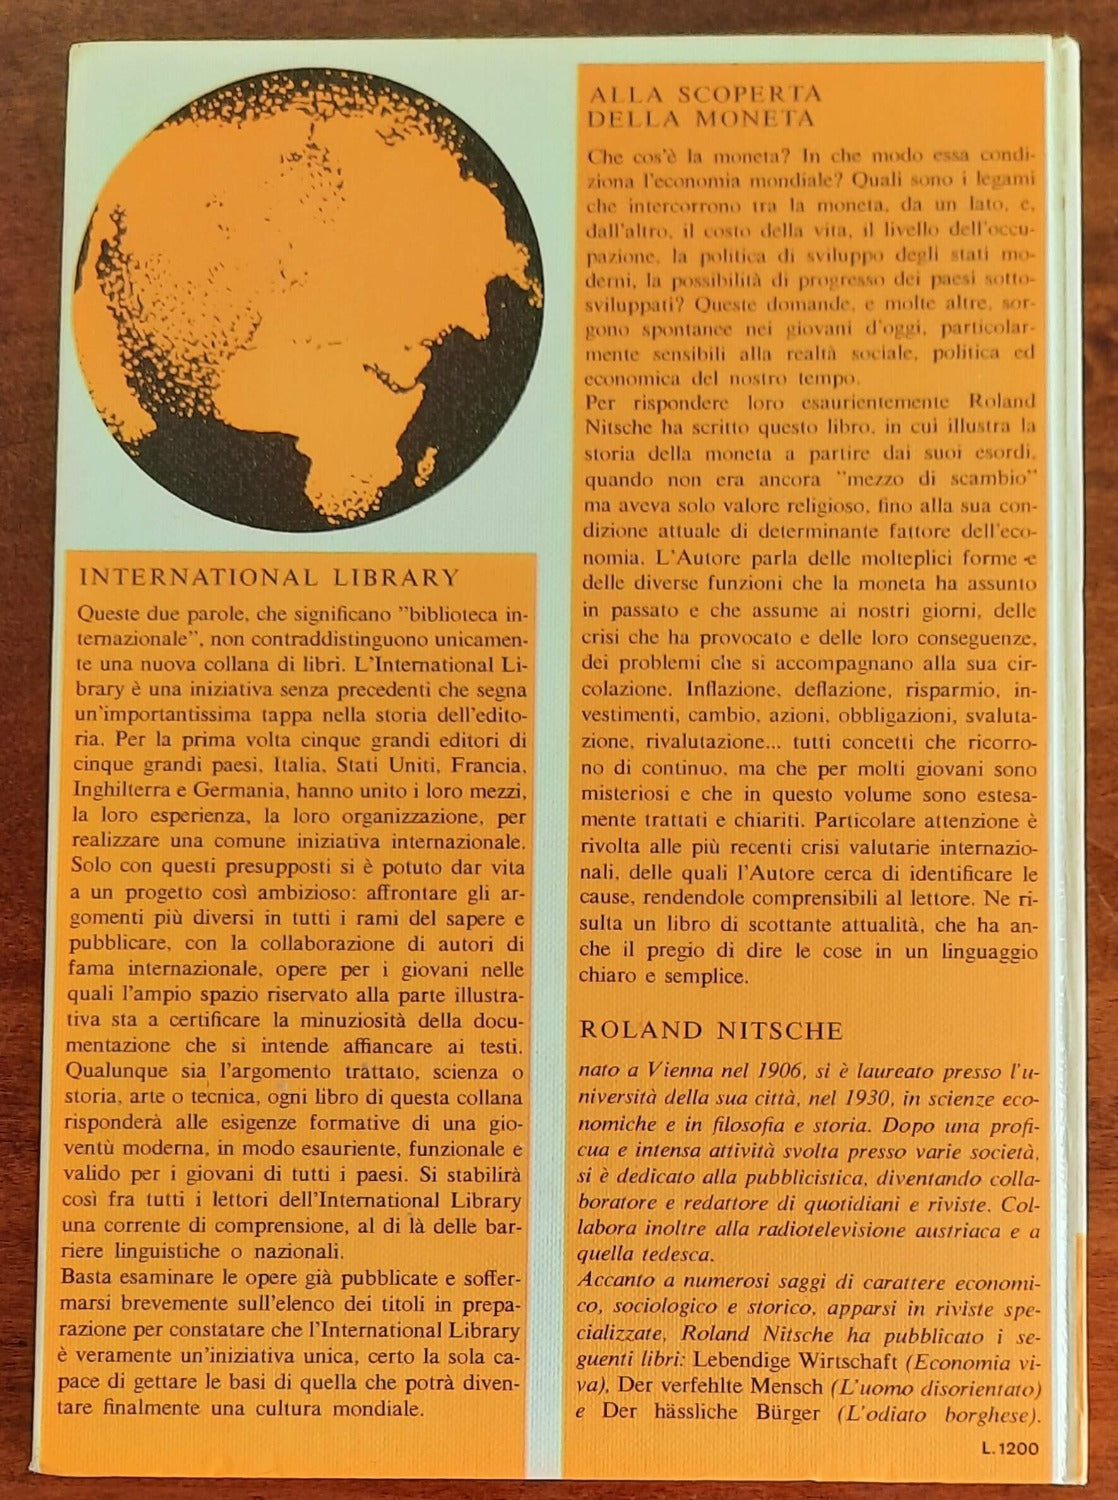 Alla scoperta della moneta - Rizzoli - 1970